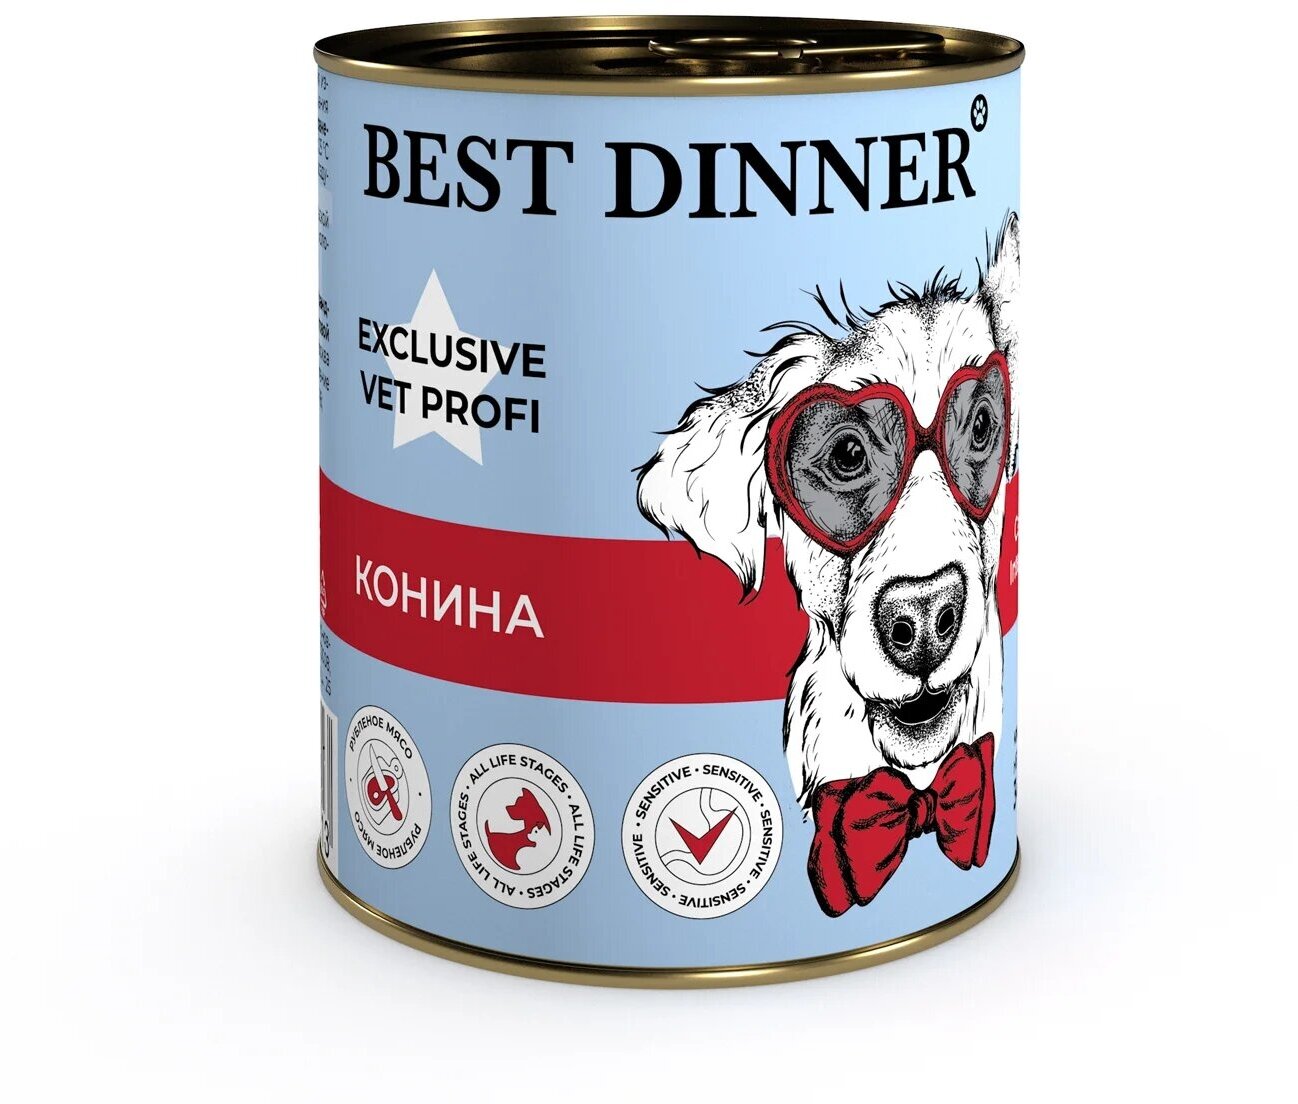 Best Dinner Vet Profi Gastro Intestinal Exclusive 12шт по 340г конина консервы для собак